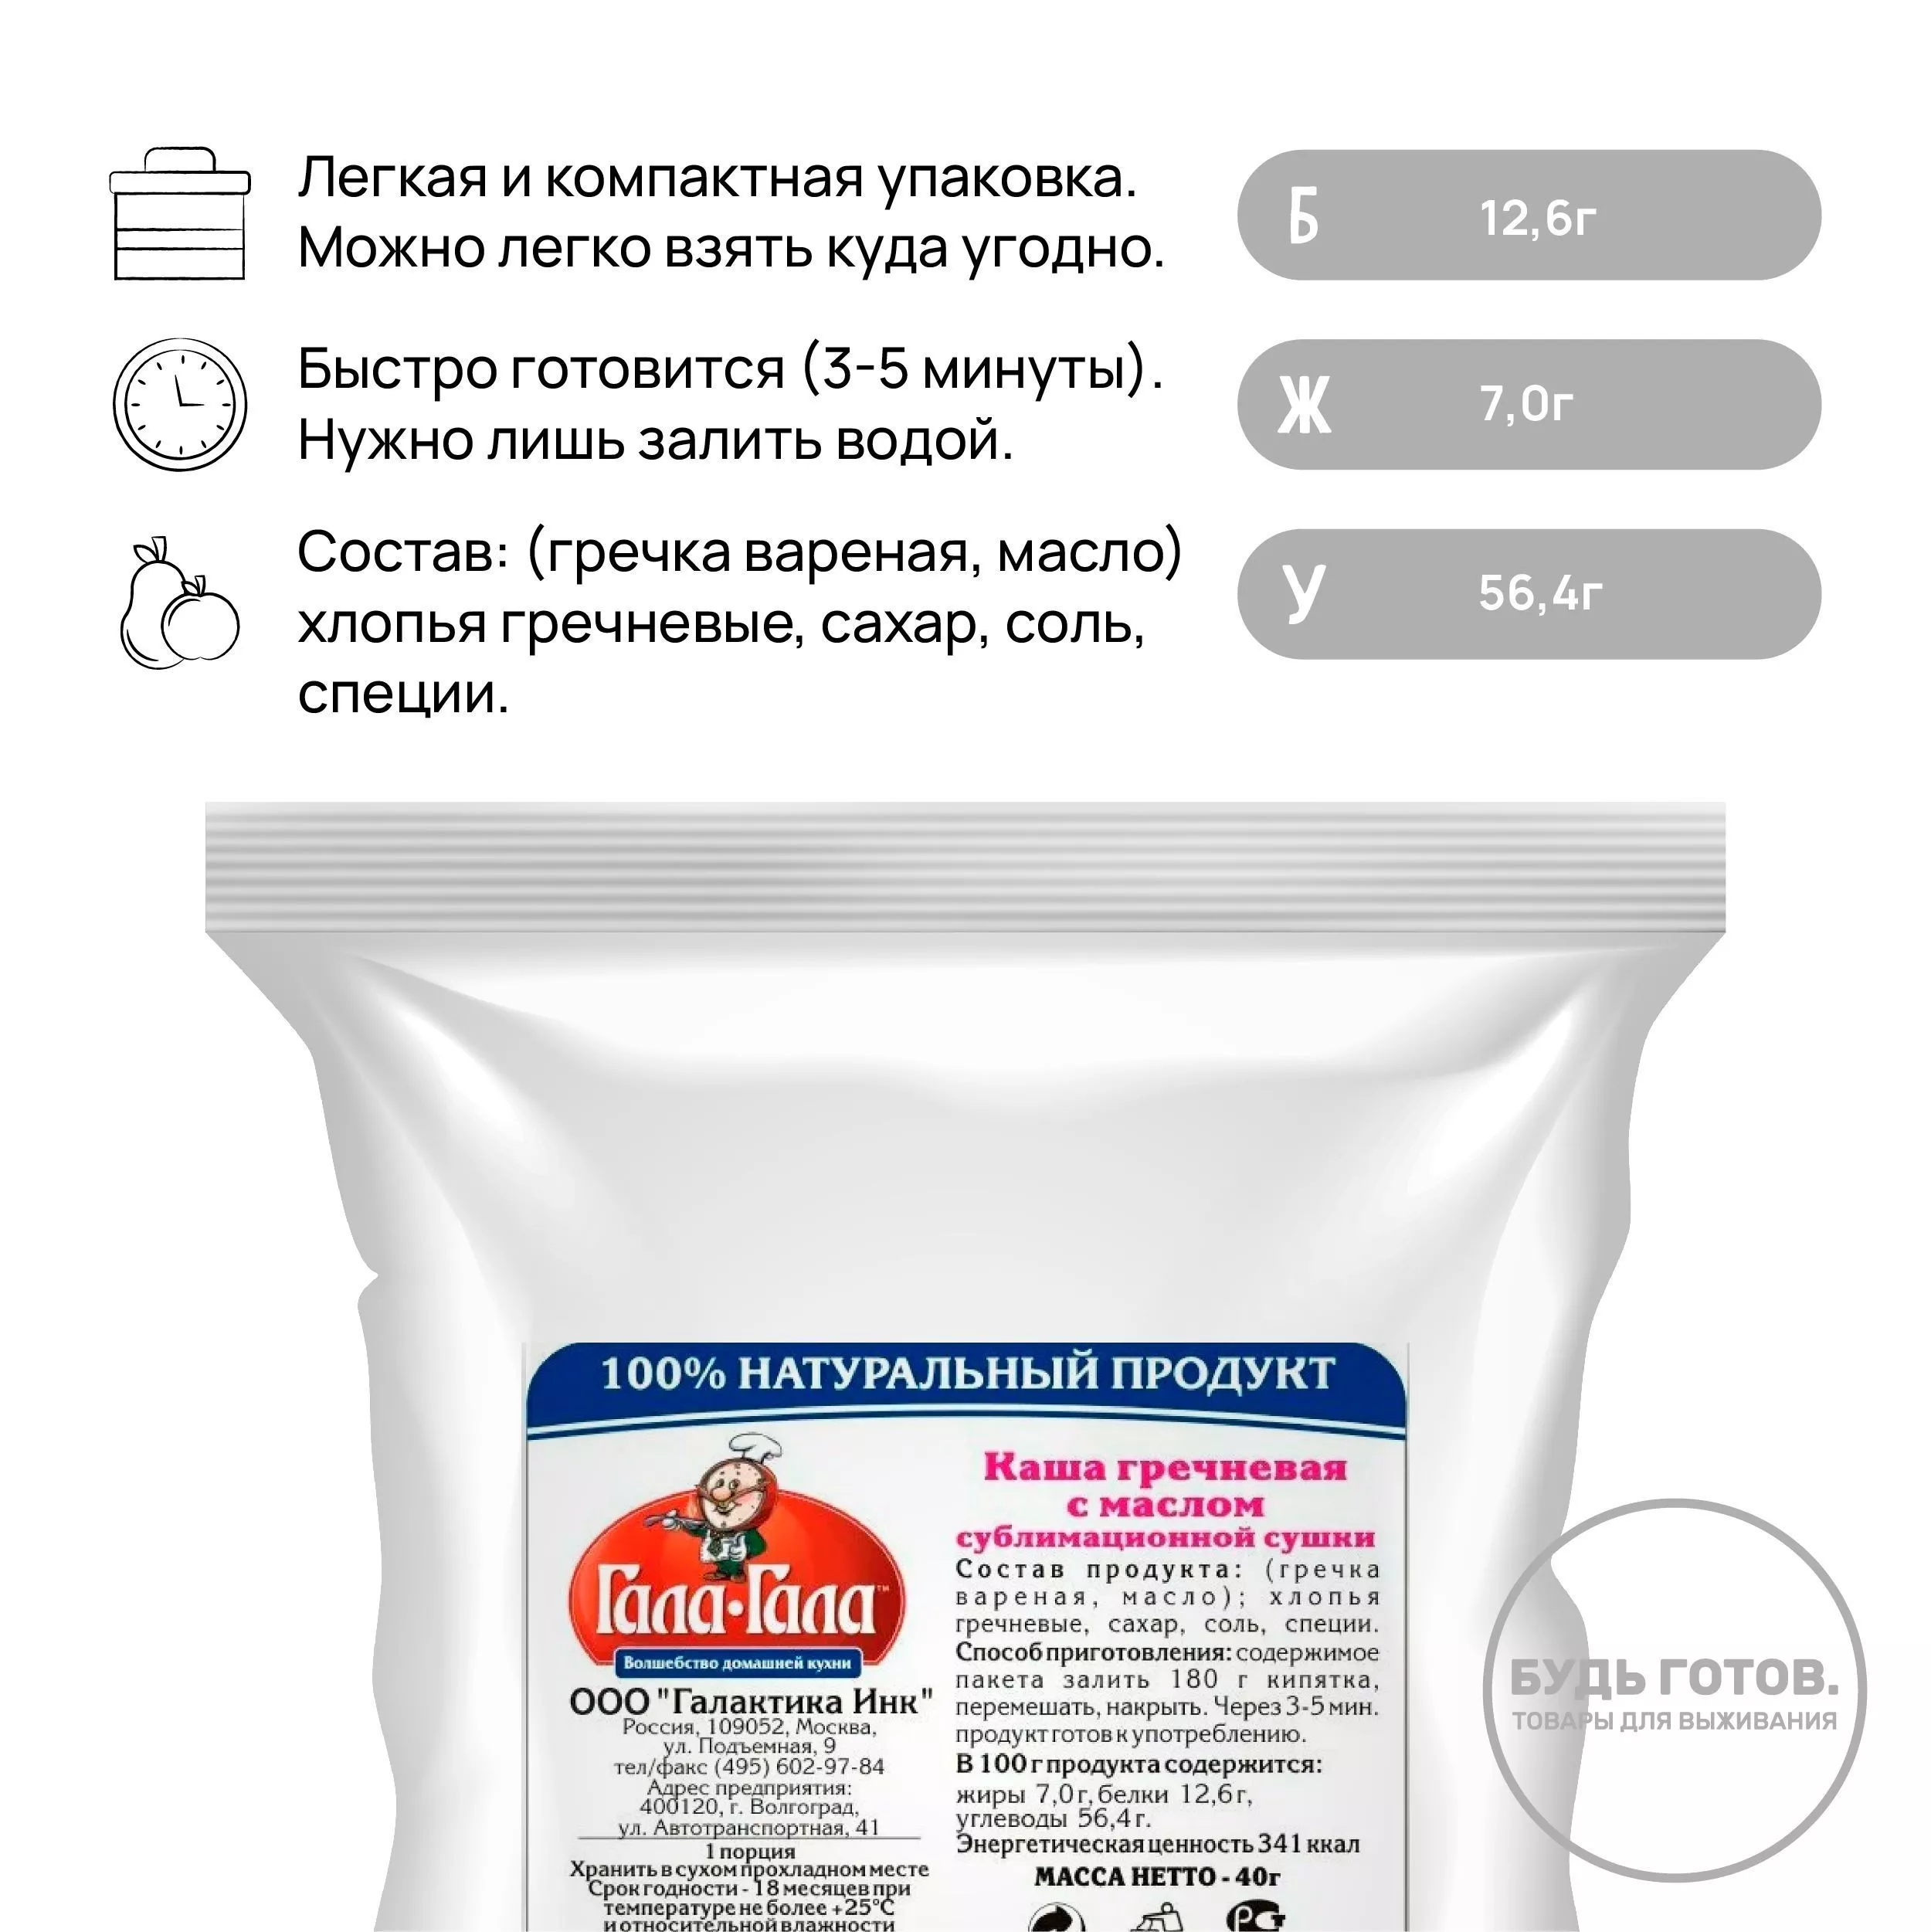 Каша гречневая с маслом "Гала-Гала" 40 г с доставкой по России и в Казахстан | BreadyФото 1